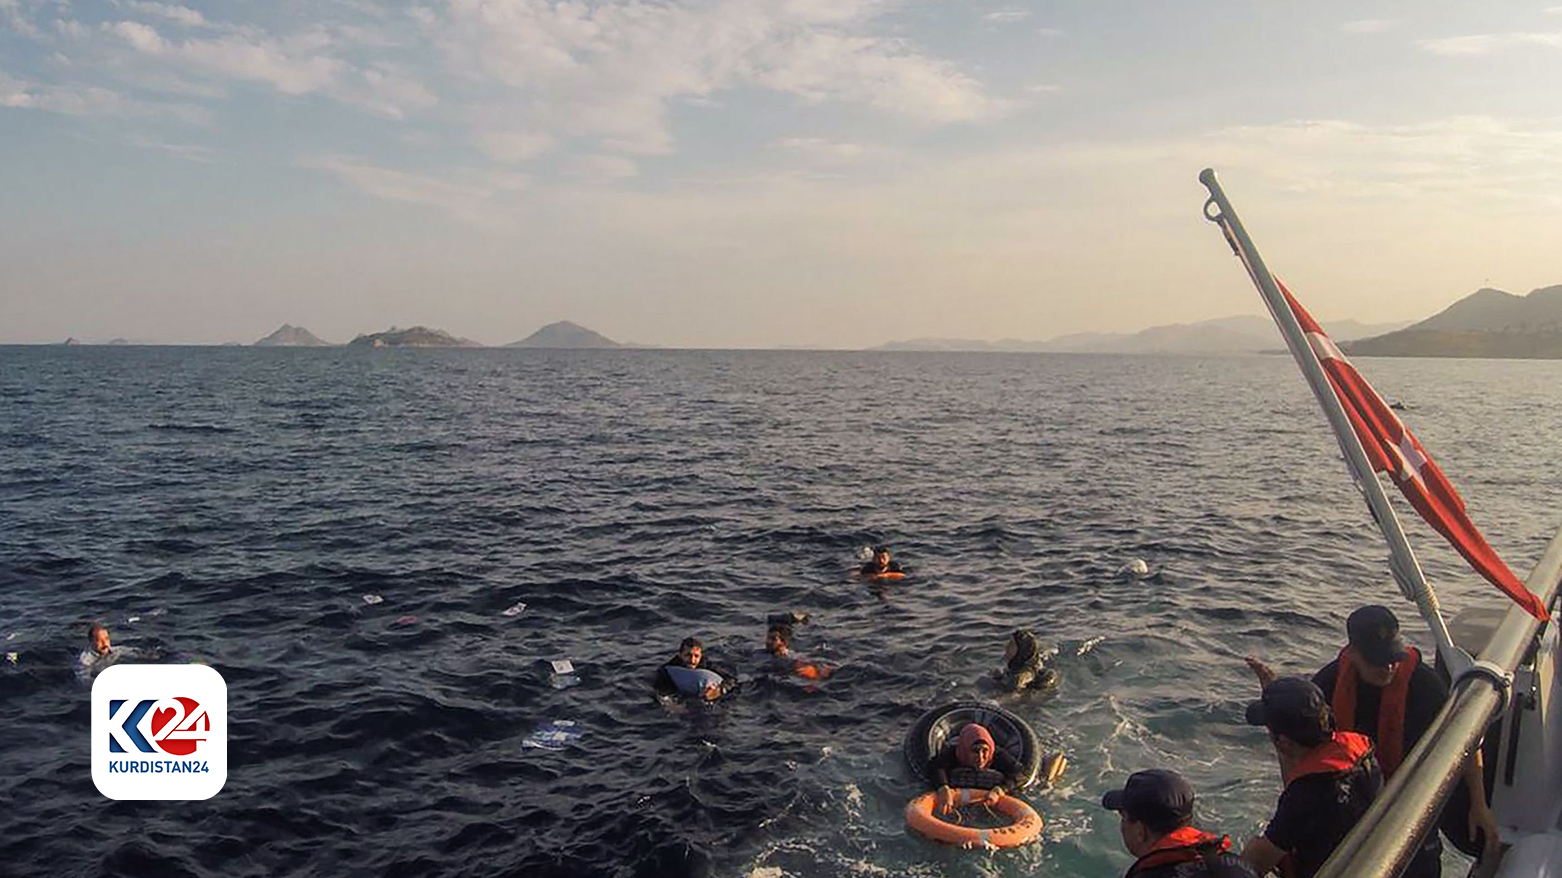 خفر السواحل التركي ينقذ مهاجرين انقلب قاربهم في بحر إيجة / ديلي صباح التركية